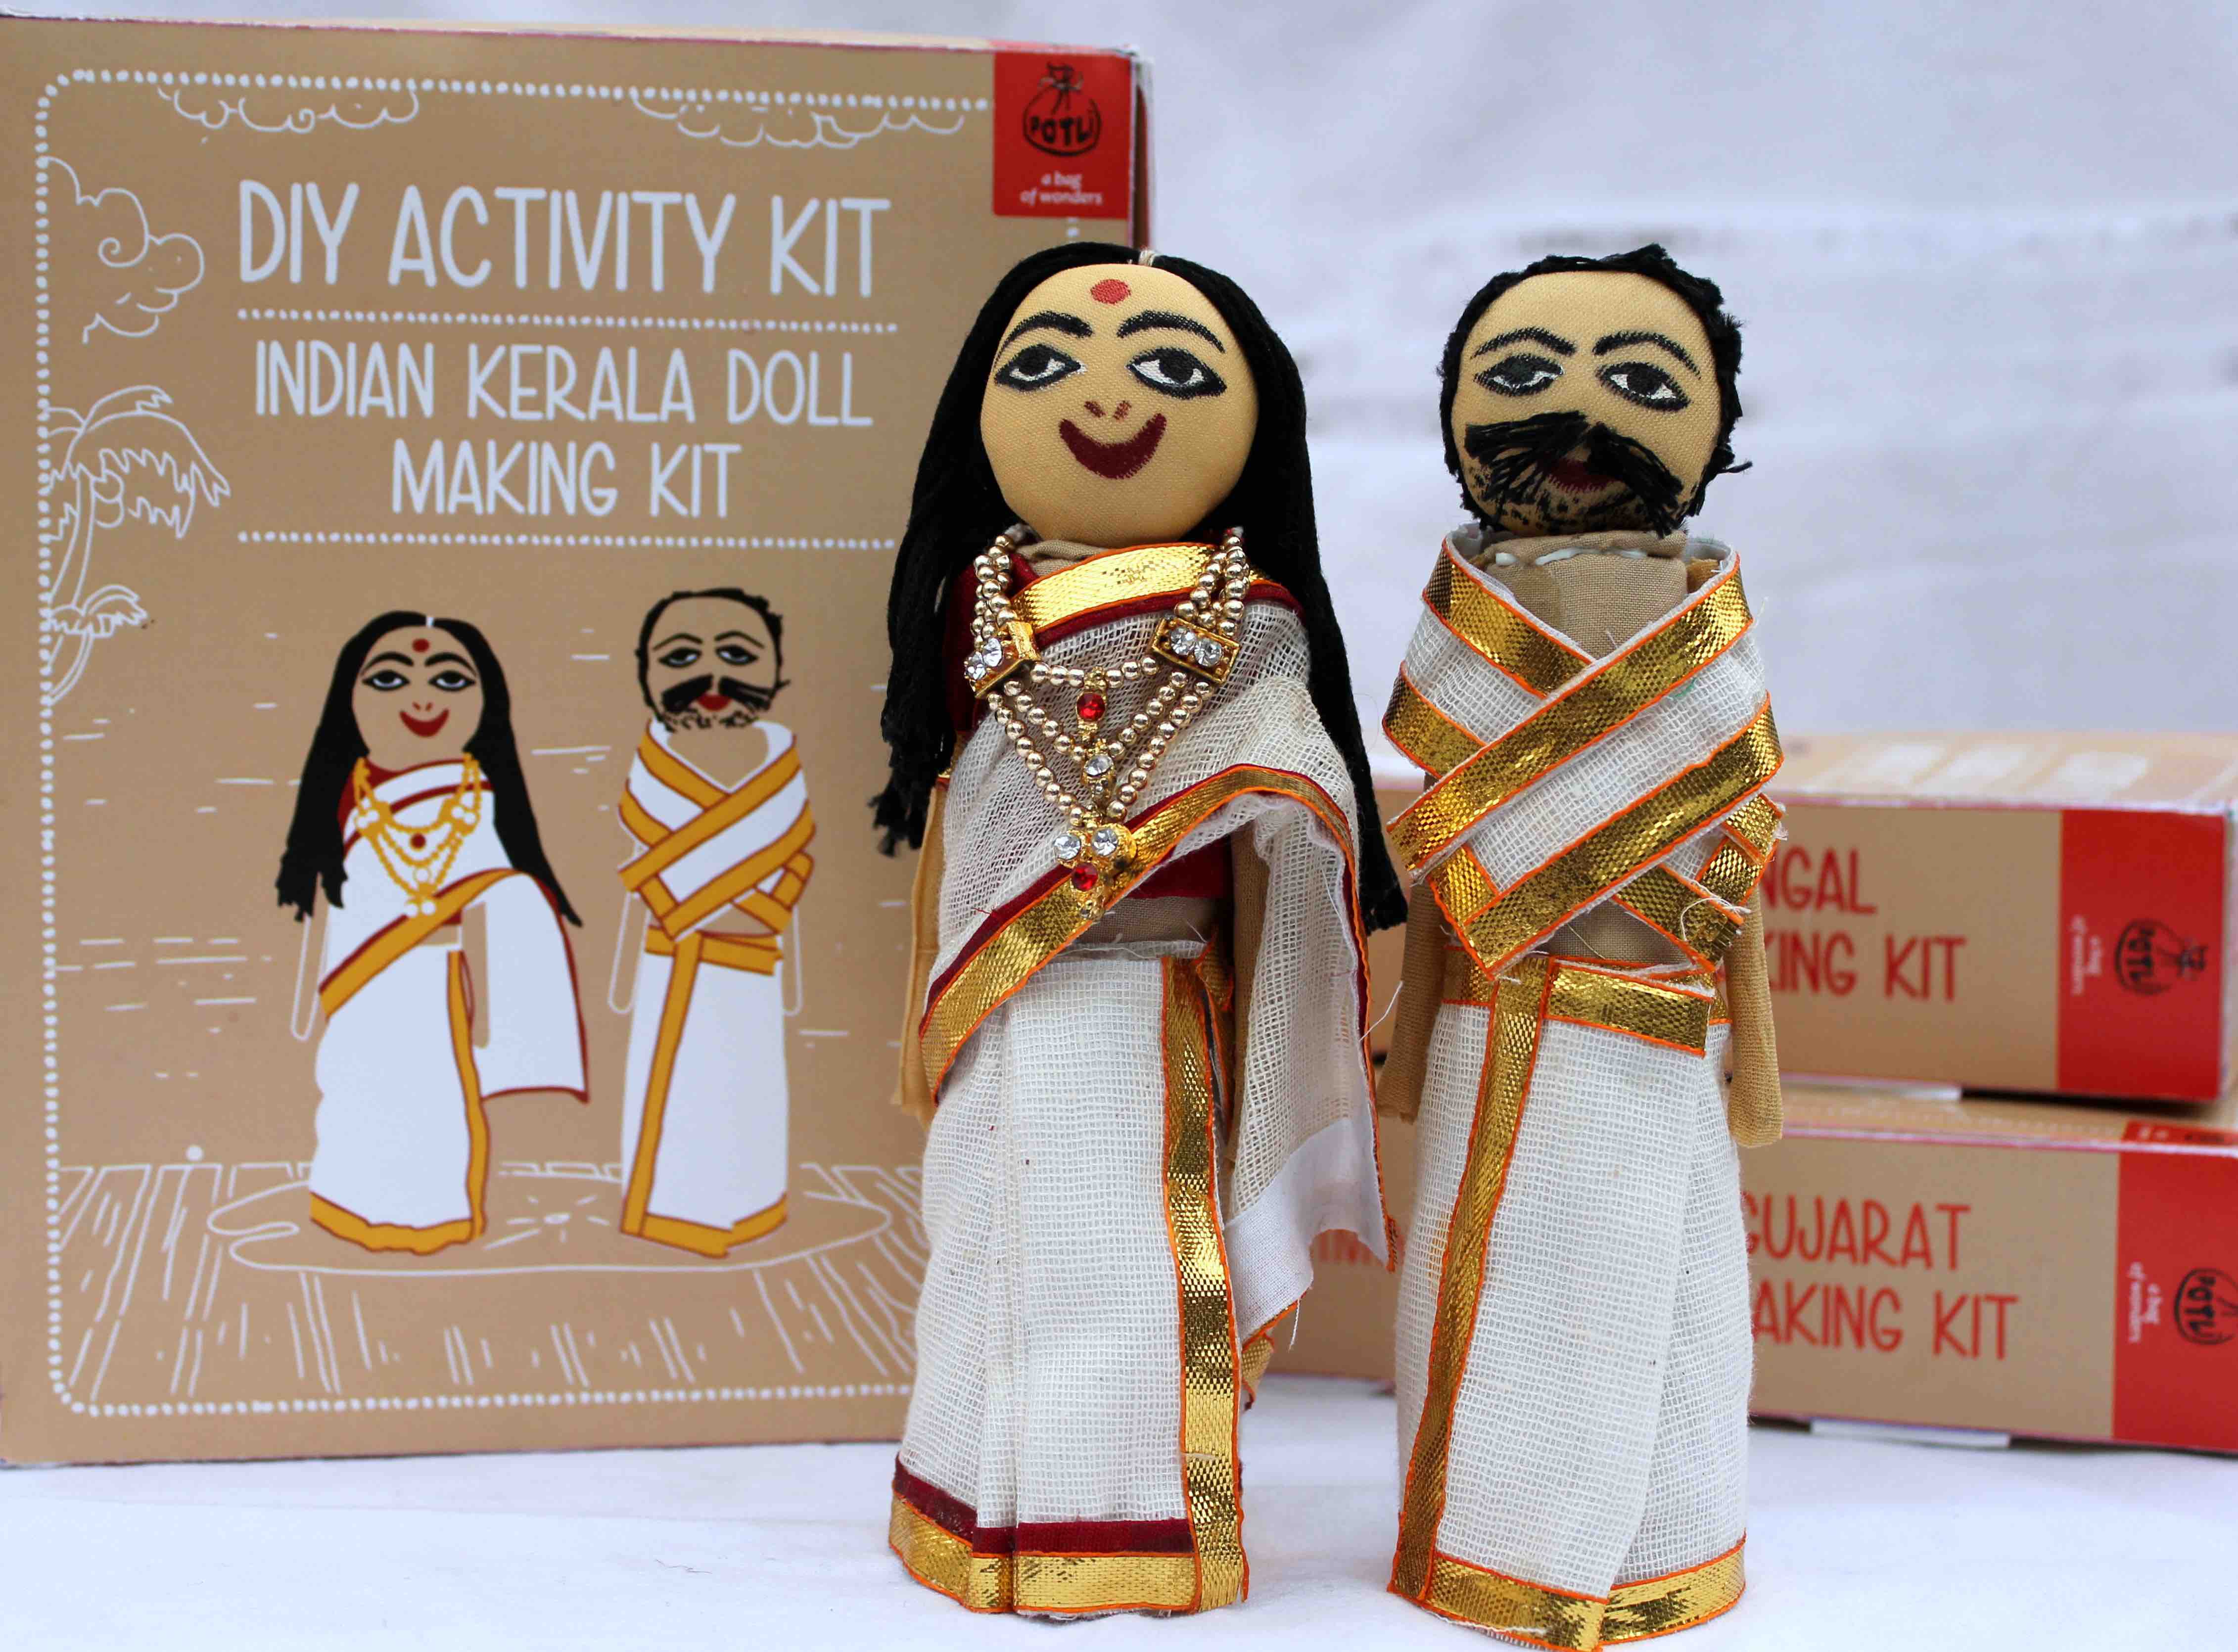 Indian Doll making Kit